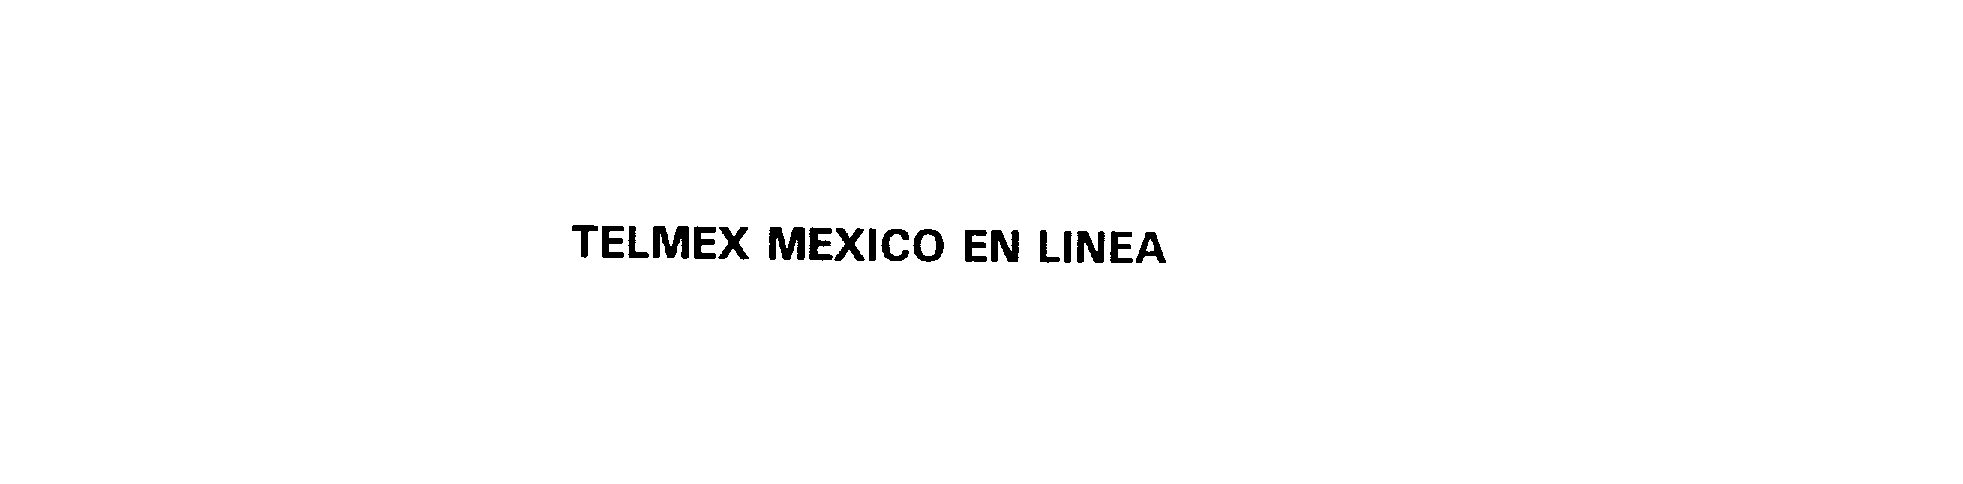  TELMEX MEXICO EN LINEA